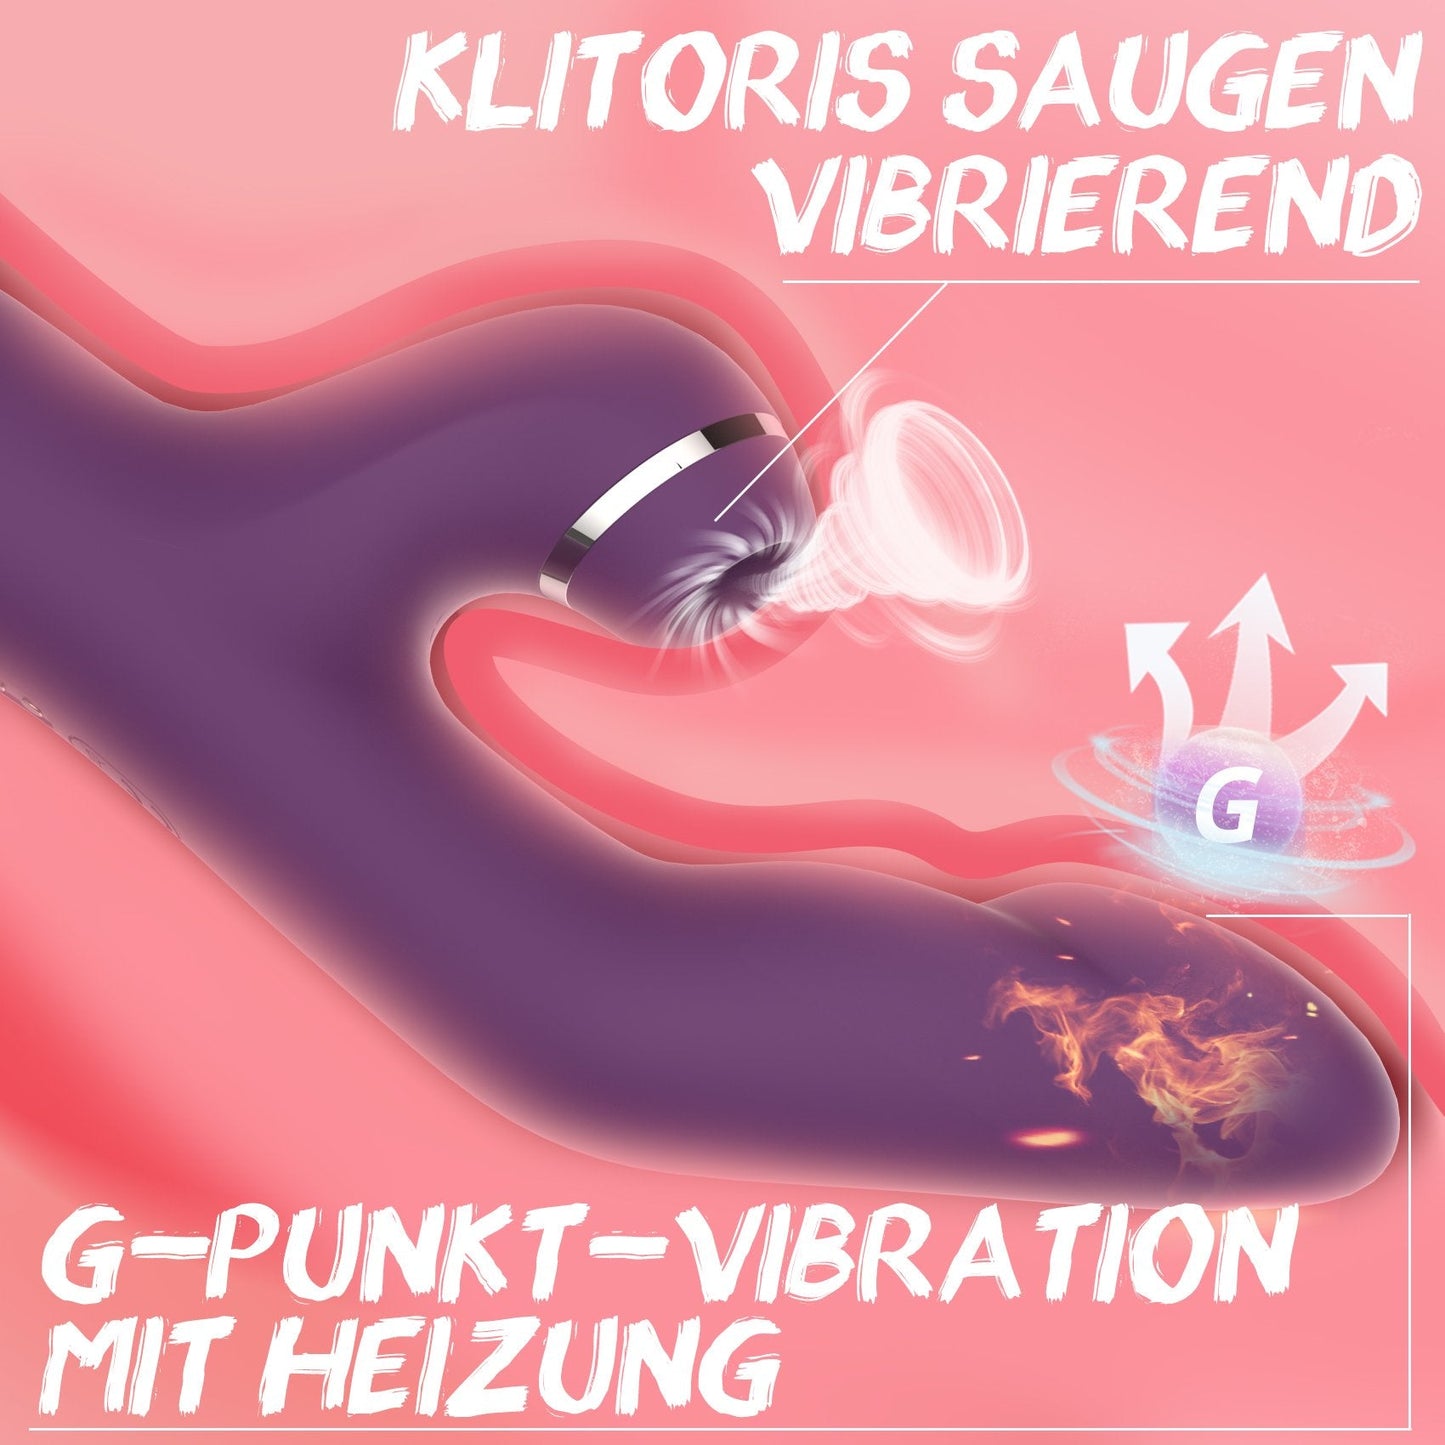 Fenado | Vibratoren für Sie Klitoris und G-punkt mit Heizung & Saugen